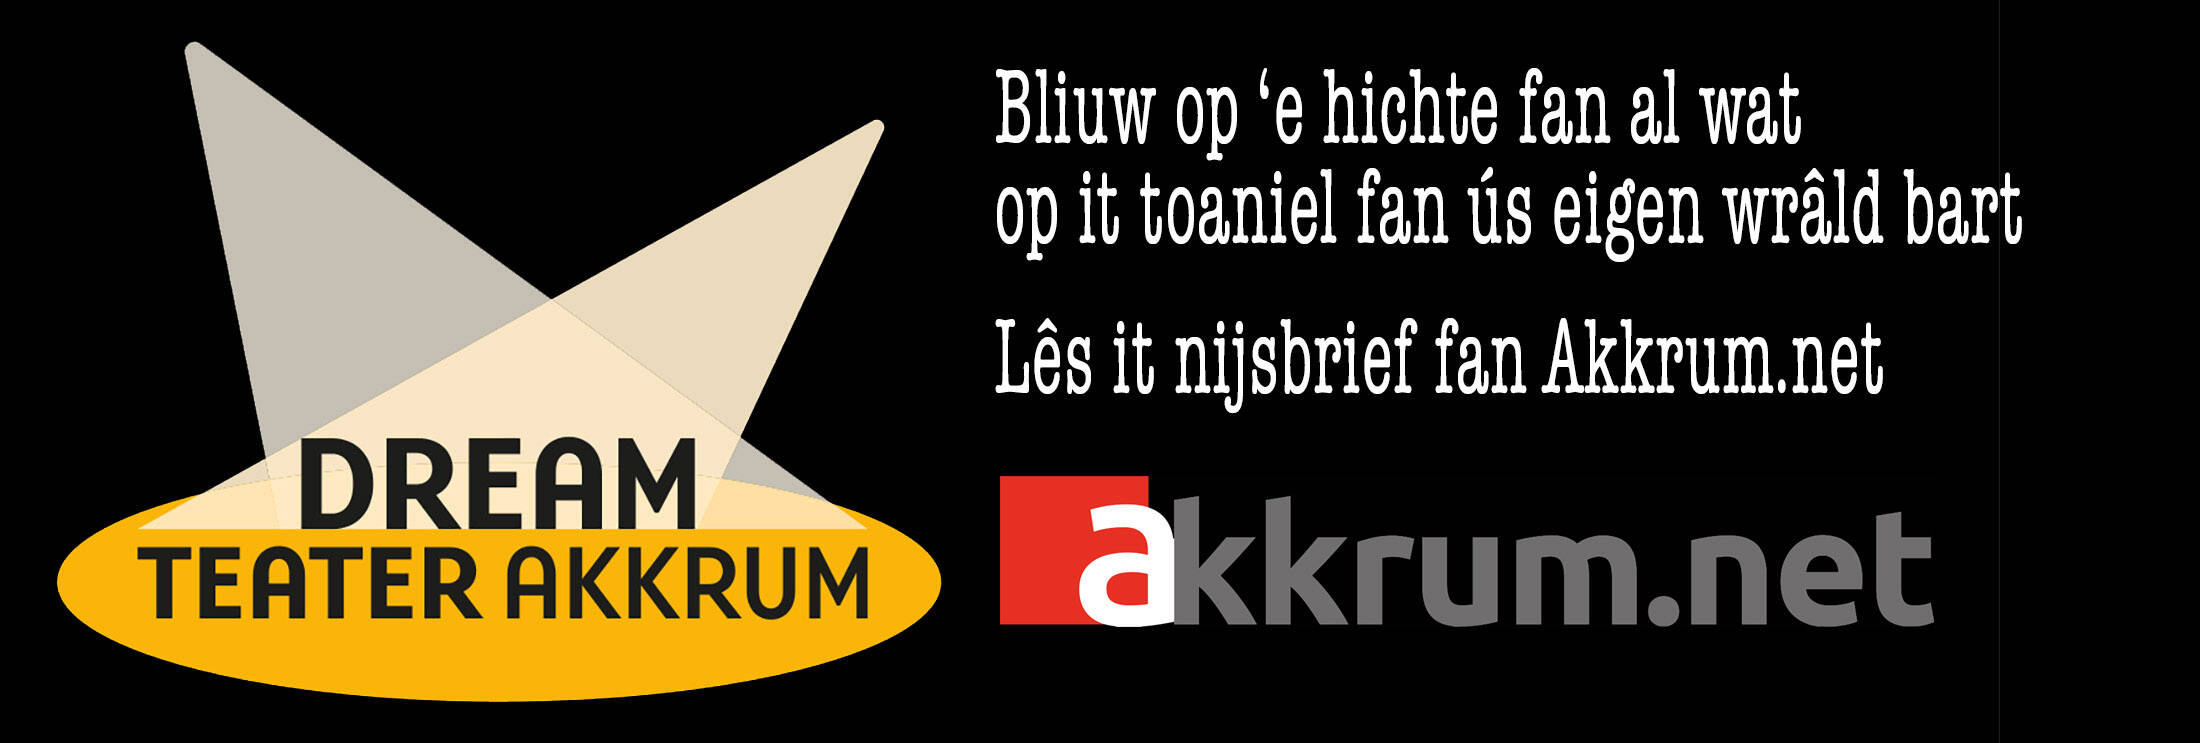 Akkrum.net Nijsbrief - Dreamteater Akkrum